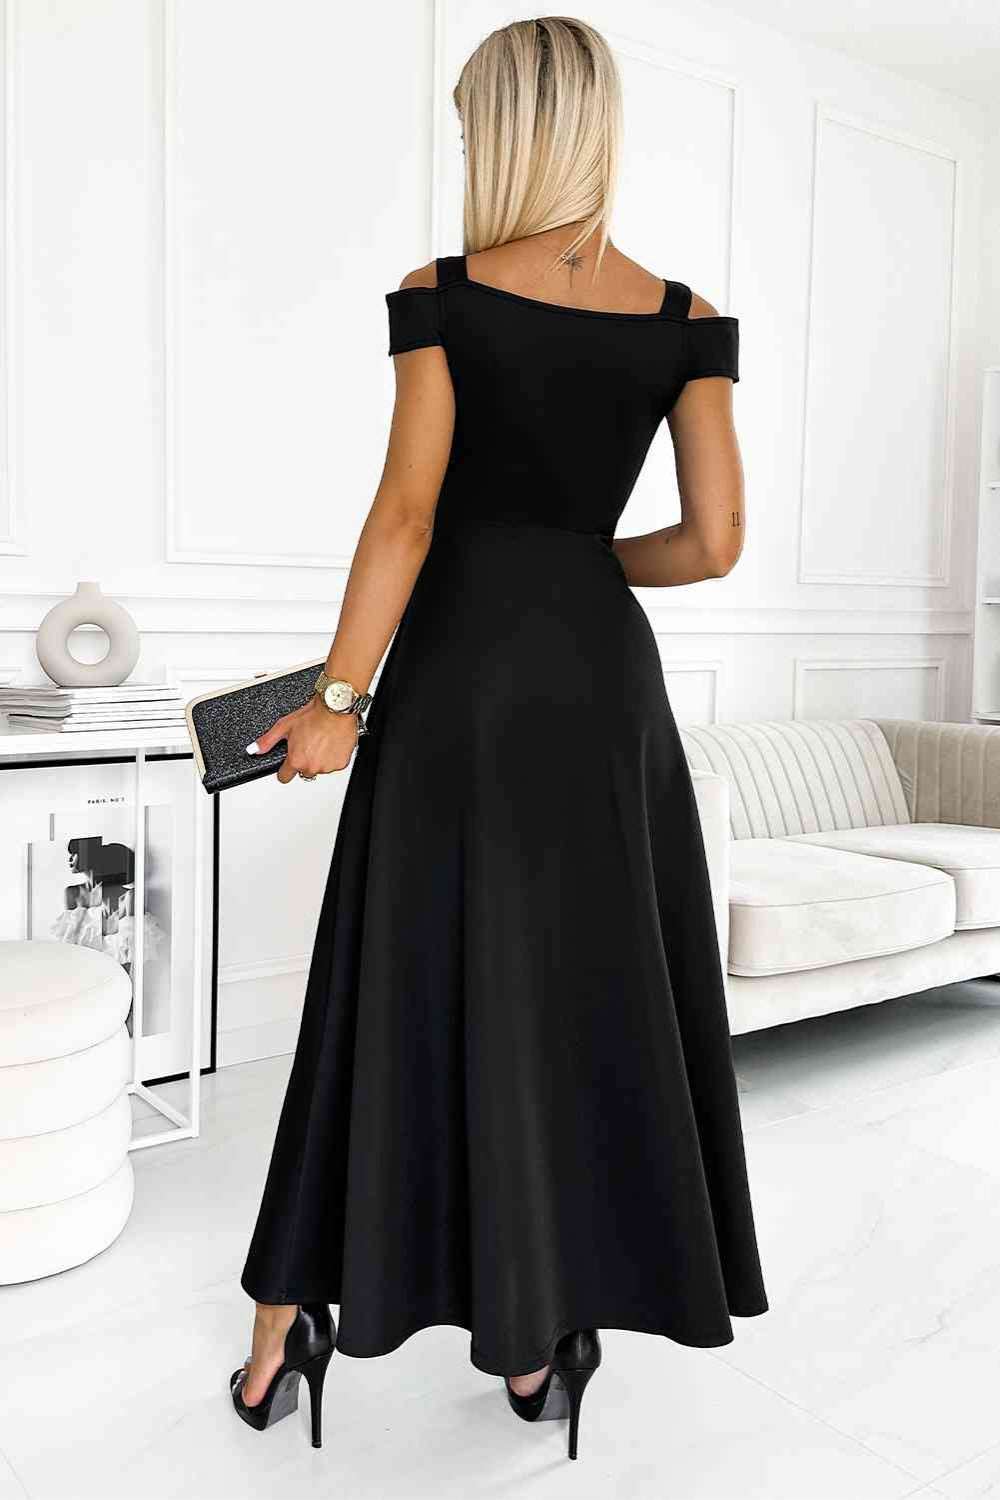 Black cold shoulder evening dress